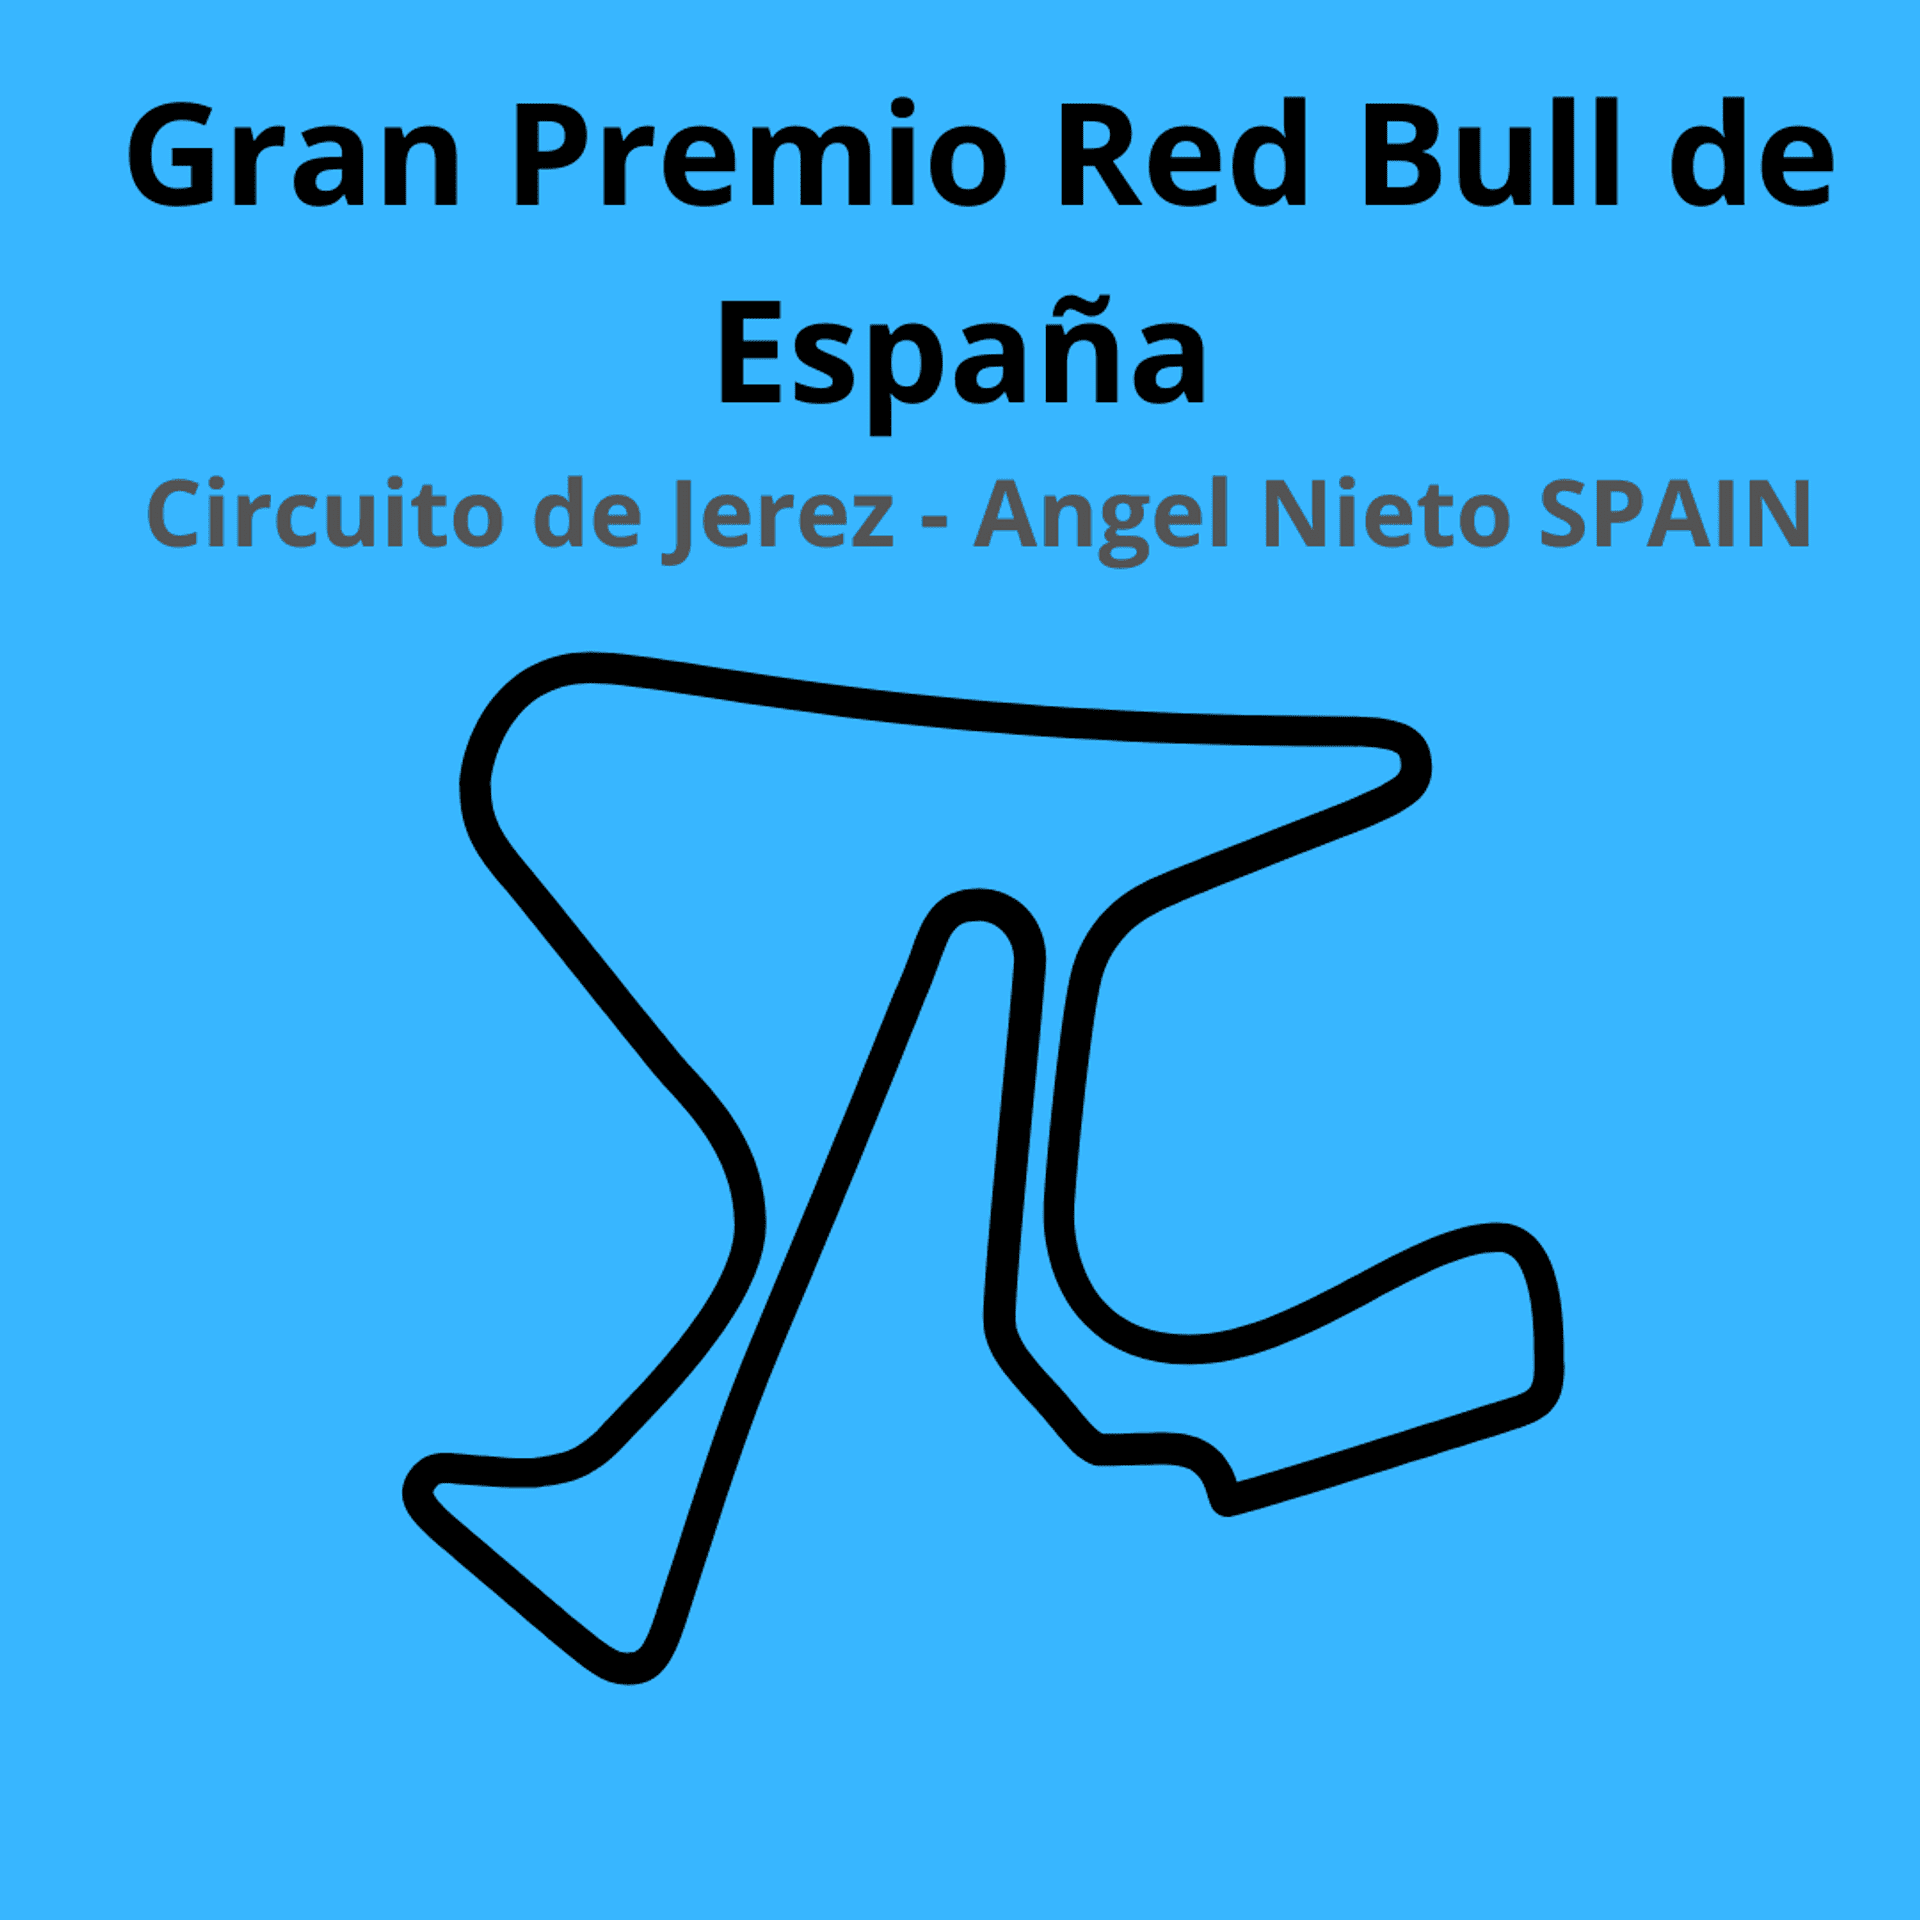 Gran Premio de Espana. Scopri tutte le gare del moto mondiale 2021.Le caratteristiche di ogni circuito, i record e difficoltà.Segui insieme a noi tutte le gare di Tony Arbolino nella sua nuova avventura in Moto2